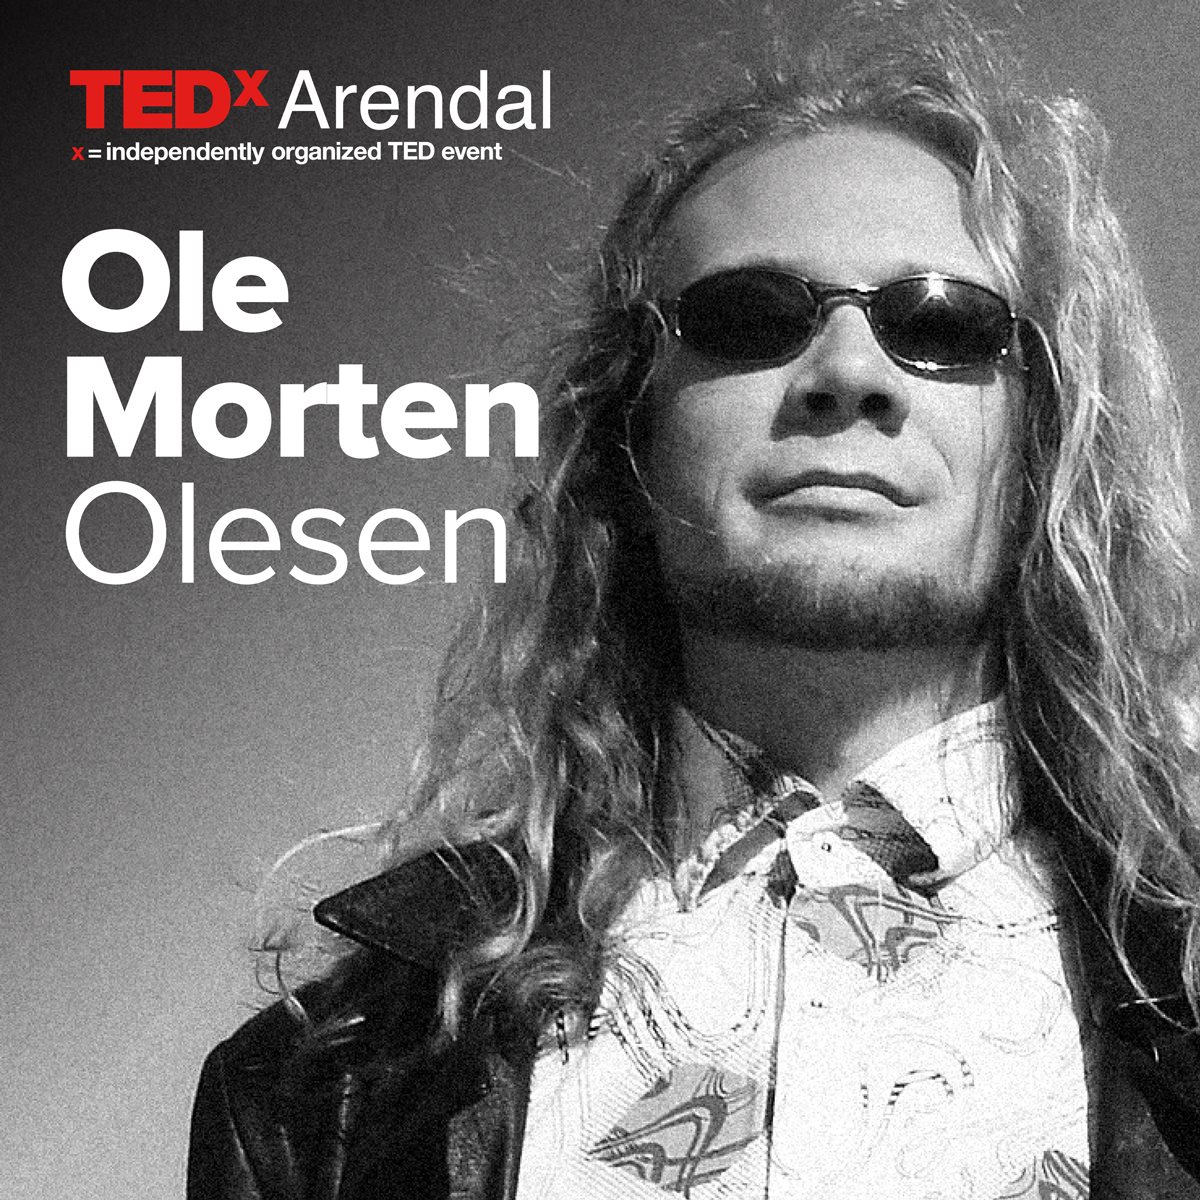 Ole Morten Olesen